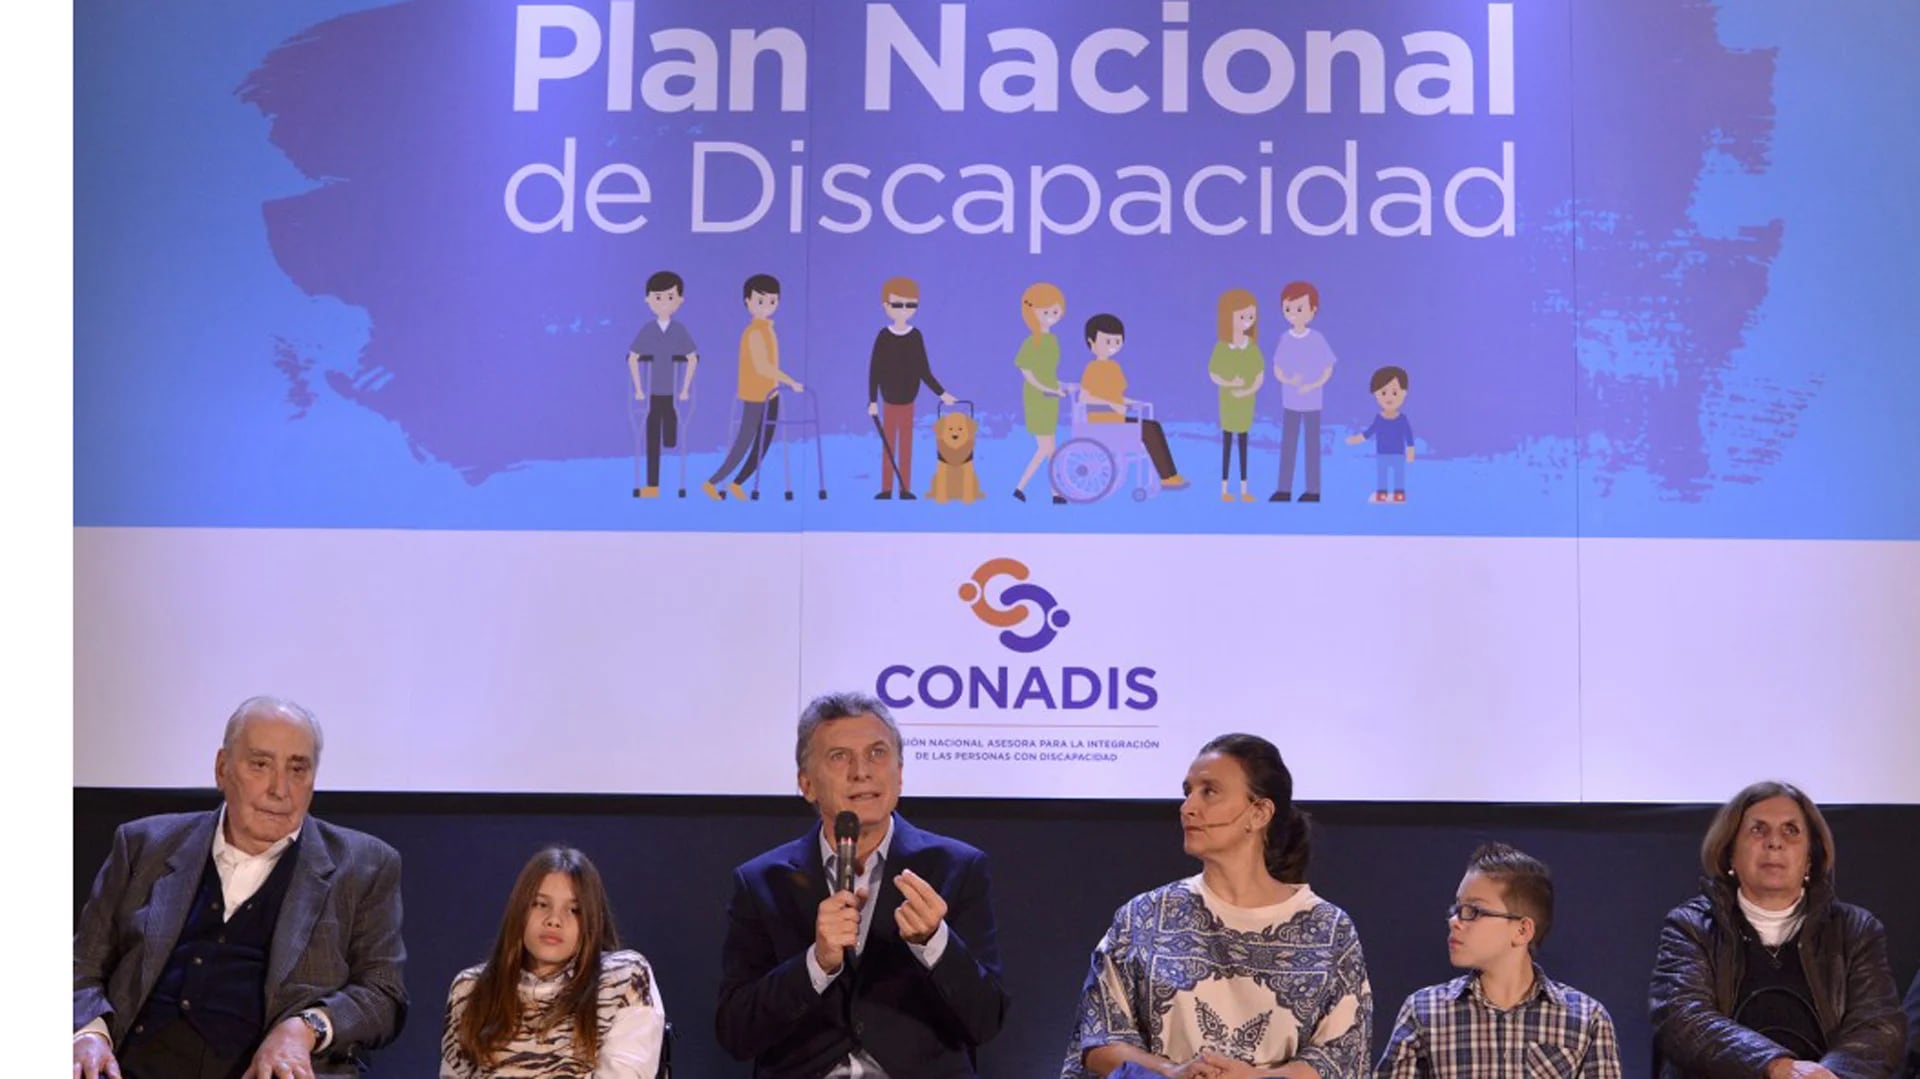 El Presidente Macri detalló el plan y pidió la integración de los discapacitados (Presidencia)